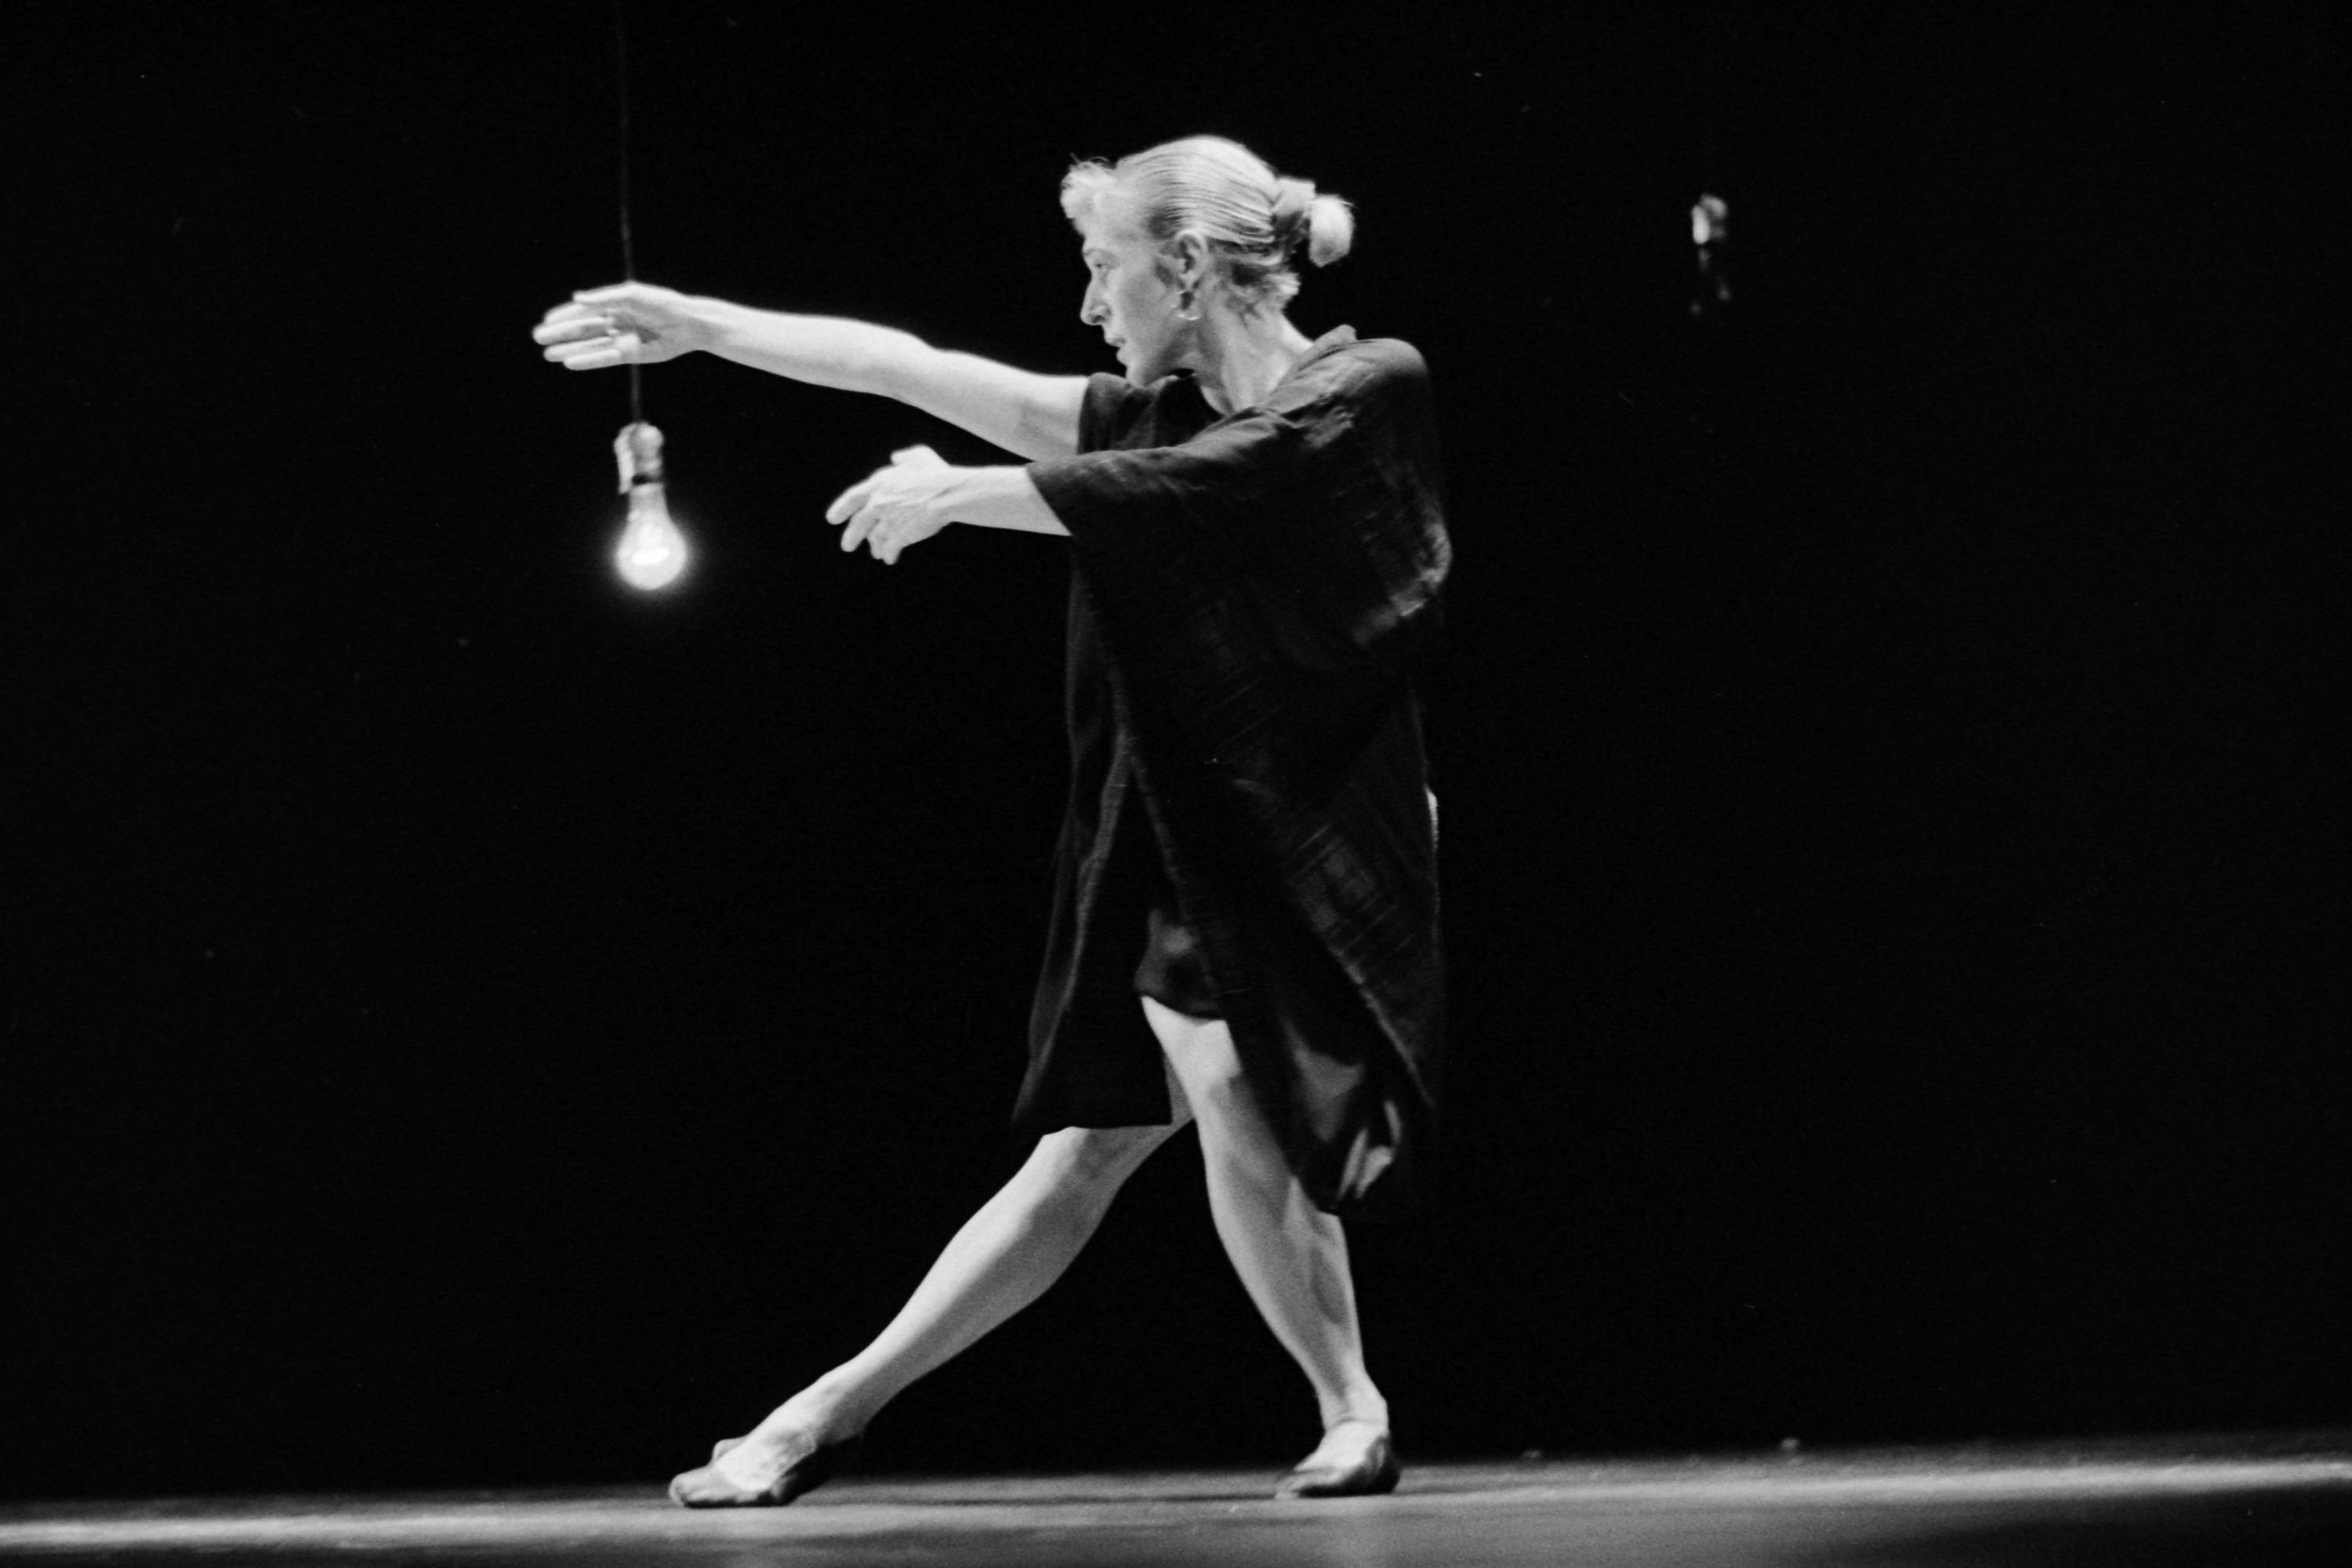 舞者的手臂、腿和目光都转向左边的黑白照片